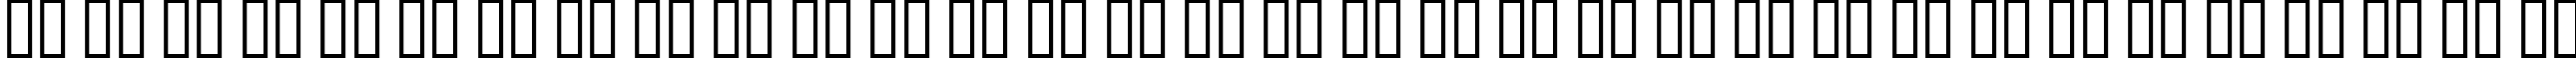 Пример написания русского алфавита шрифтом Humbucker